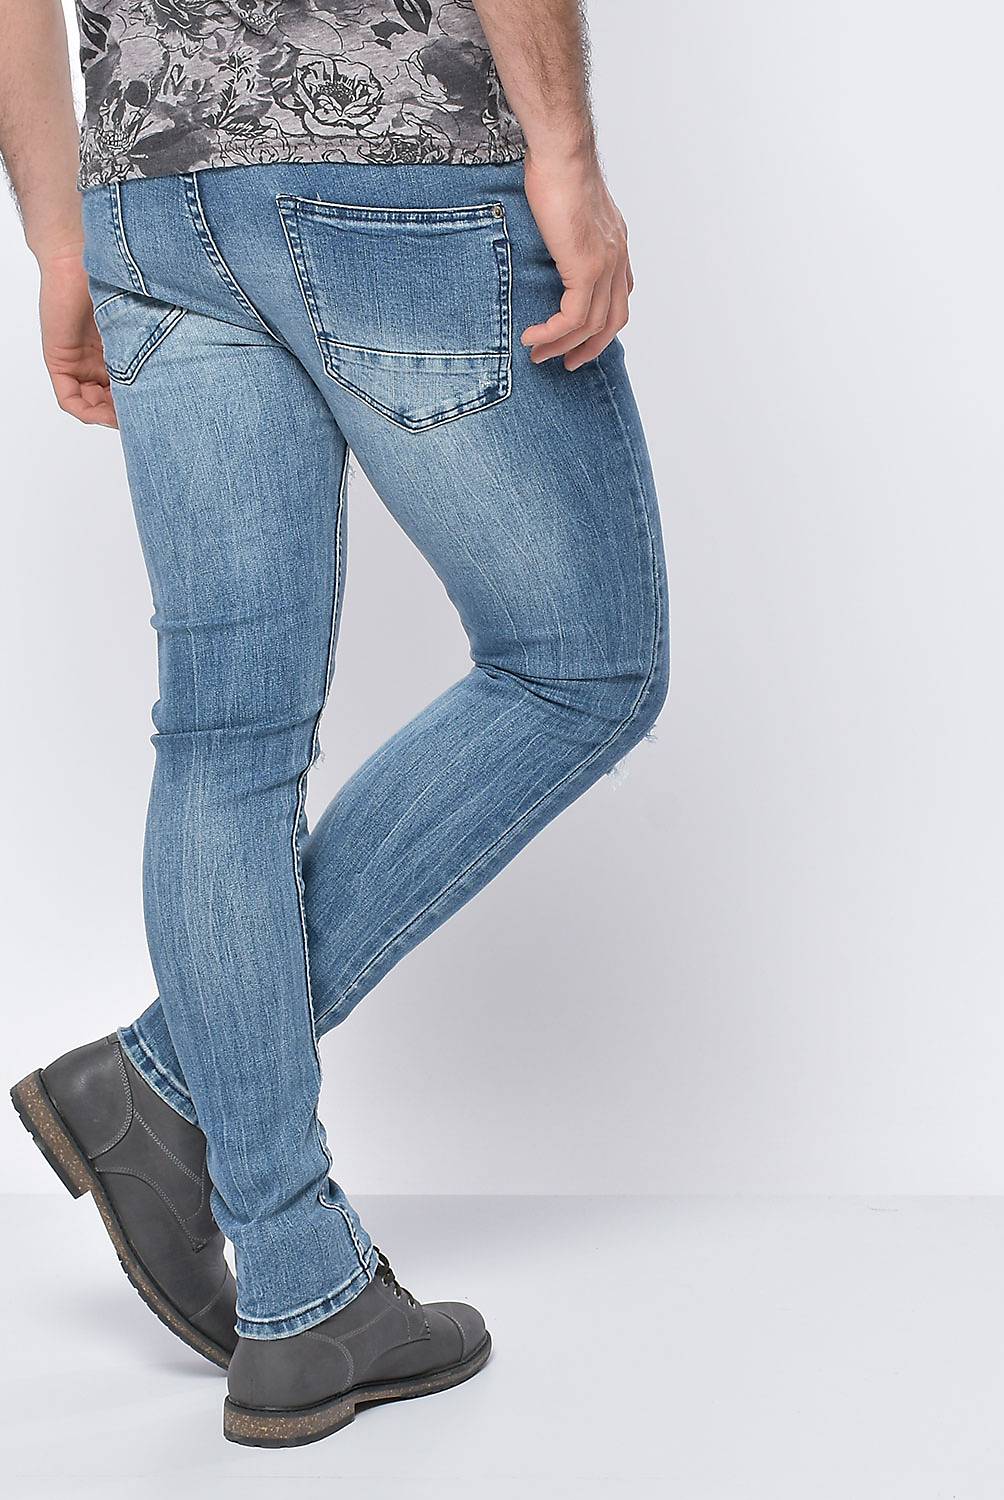 DENIMLAB - Pantalón Jeans Hombre 